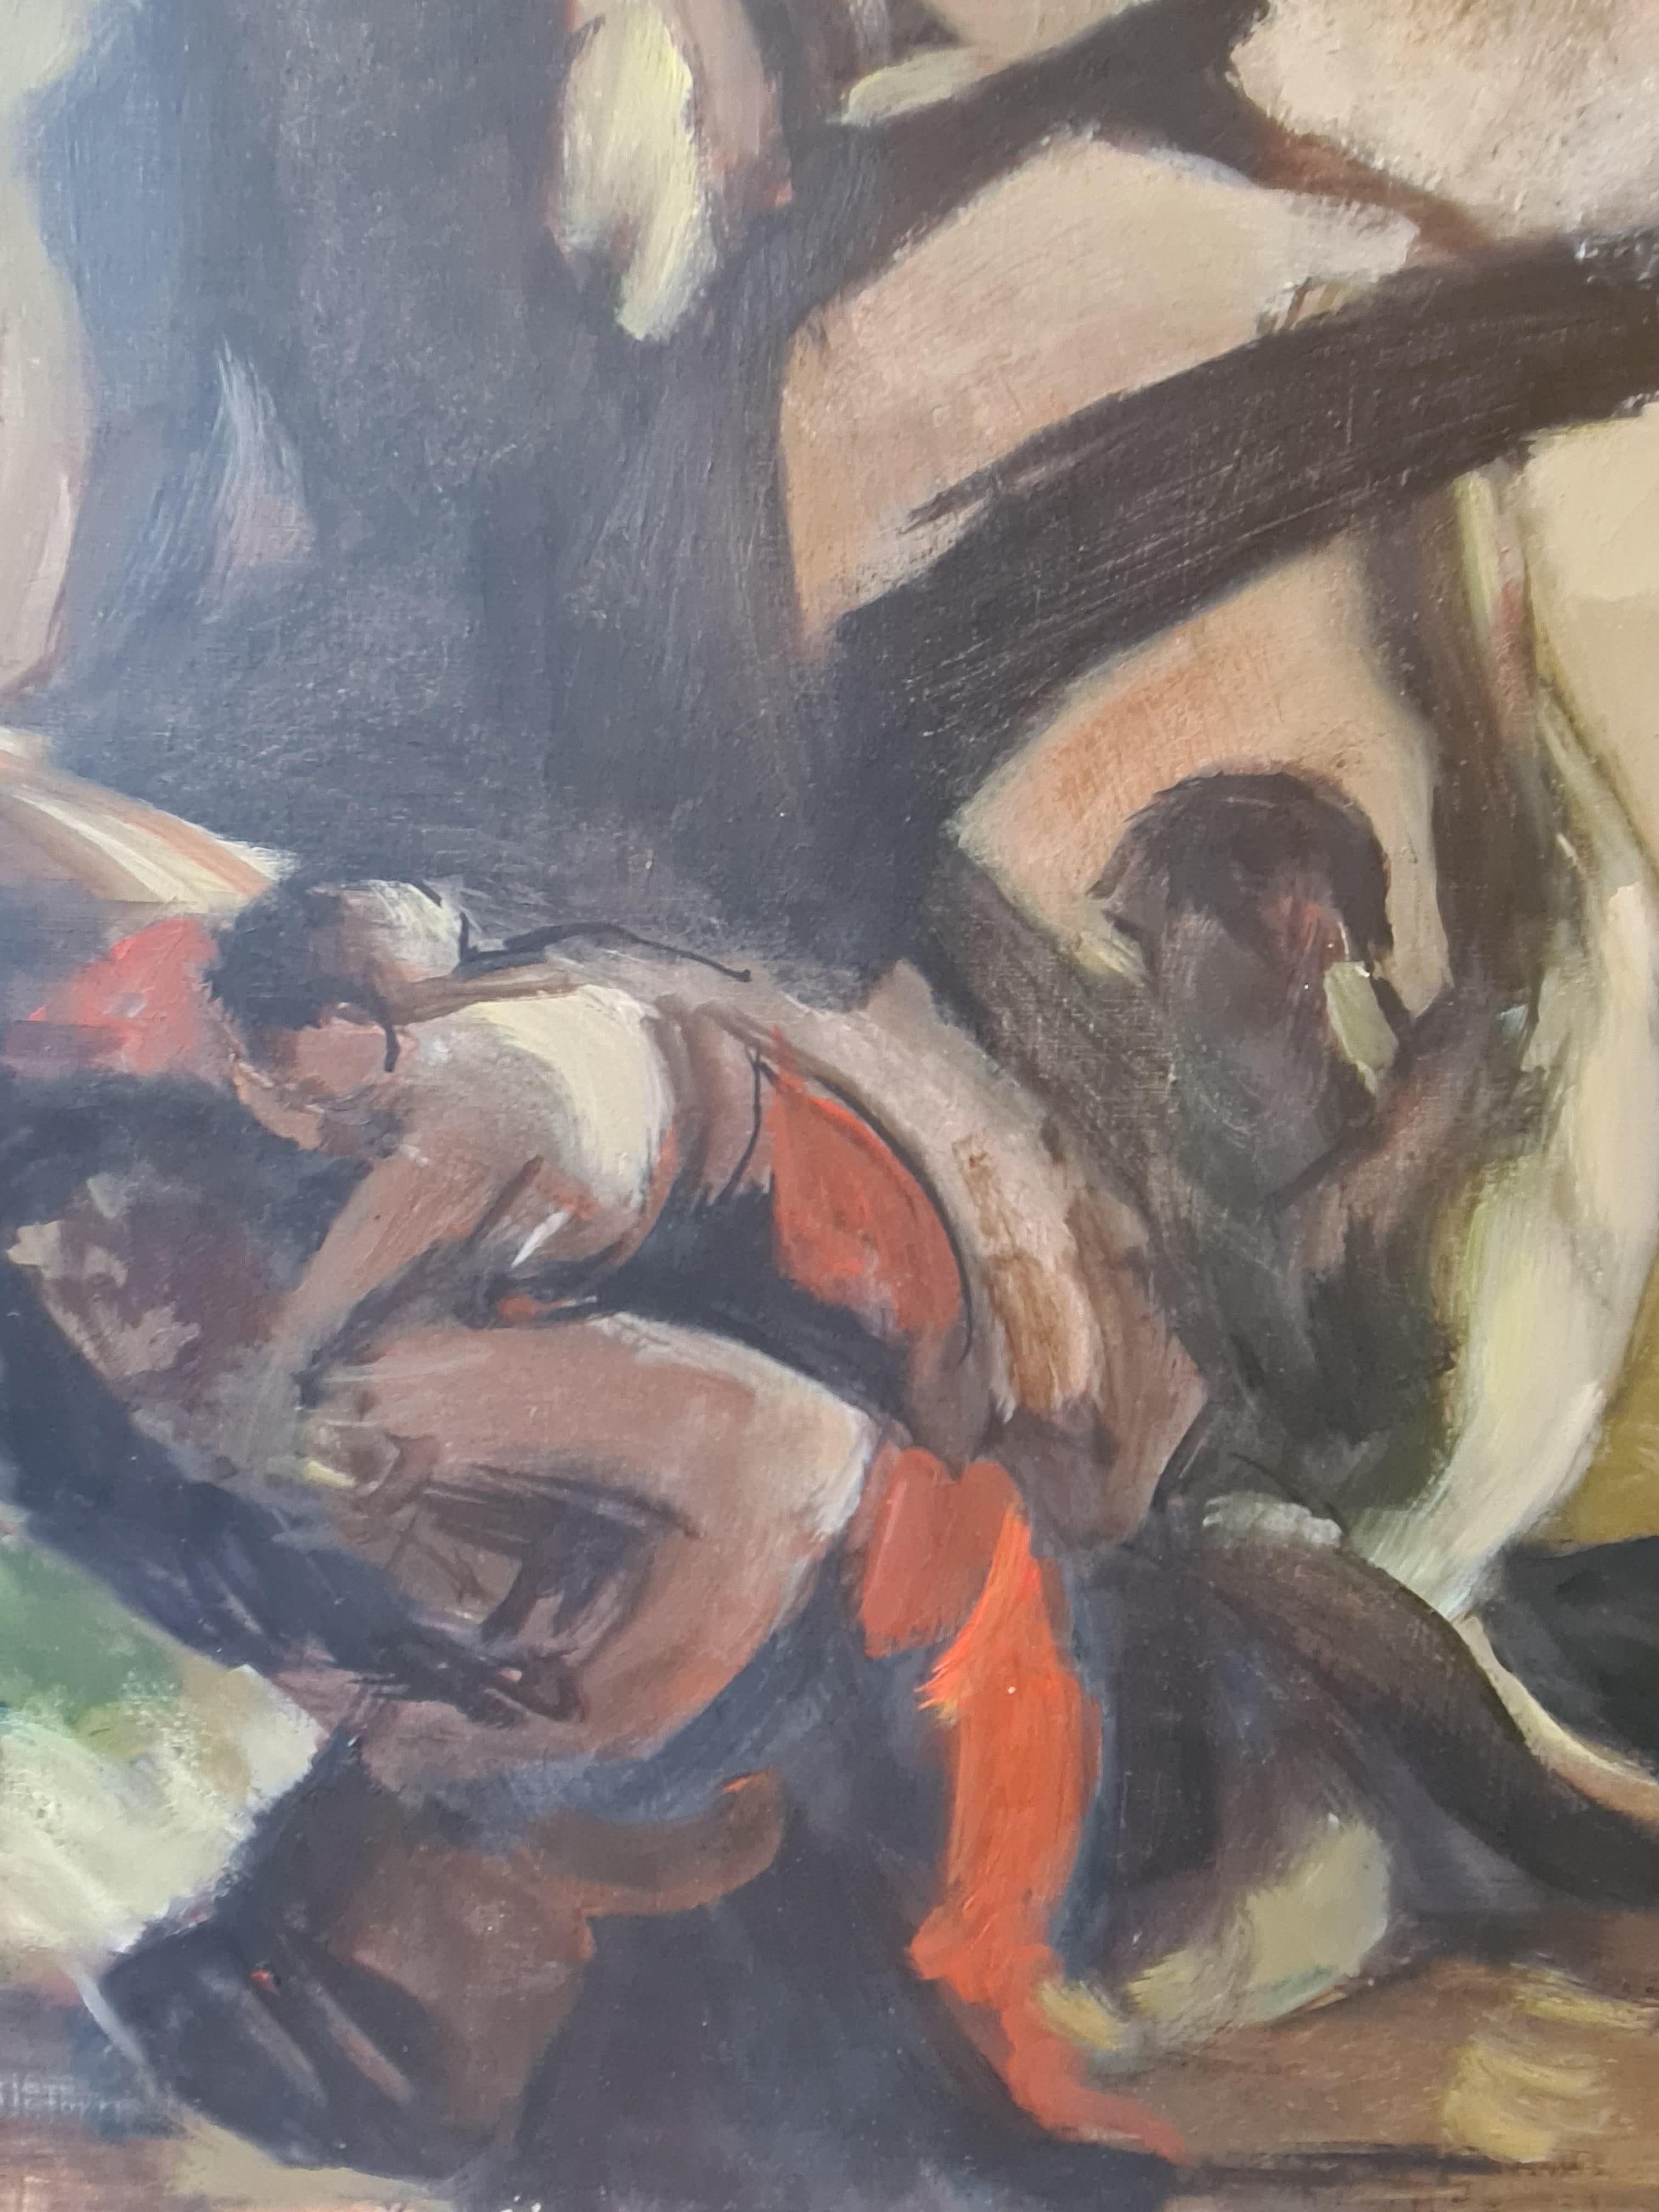 Circle of Othon Friesz, Le Naufrage, œuvre sur toile à grande échelle  - Post-impressionnisme Painting par Achille-Émile Othon Friesz